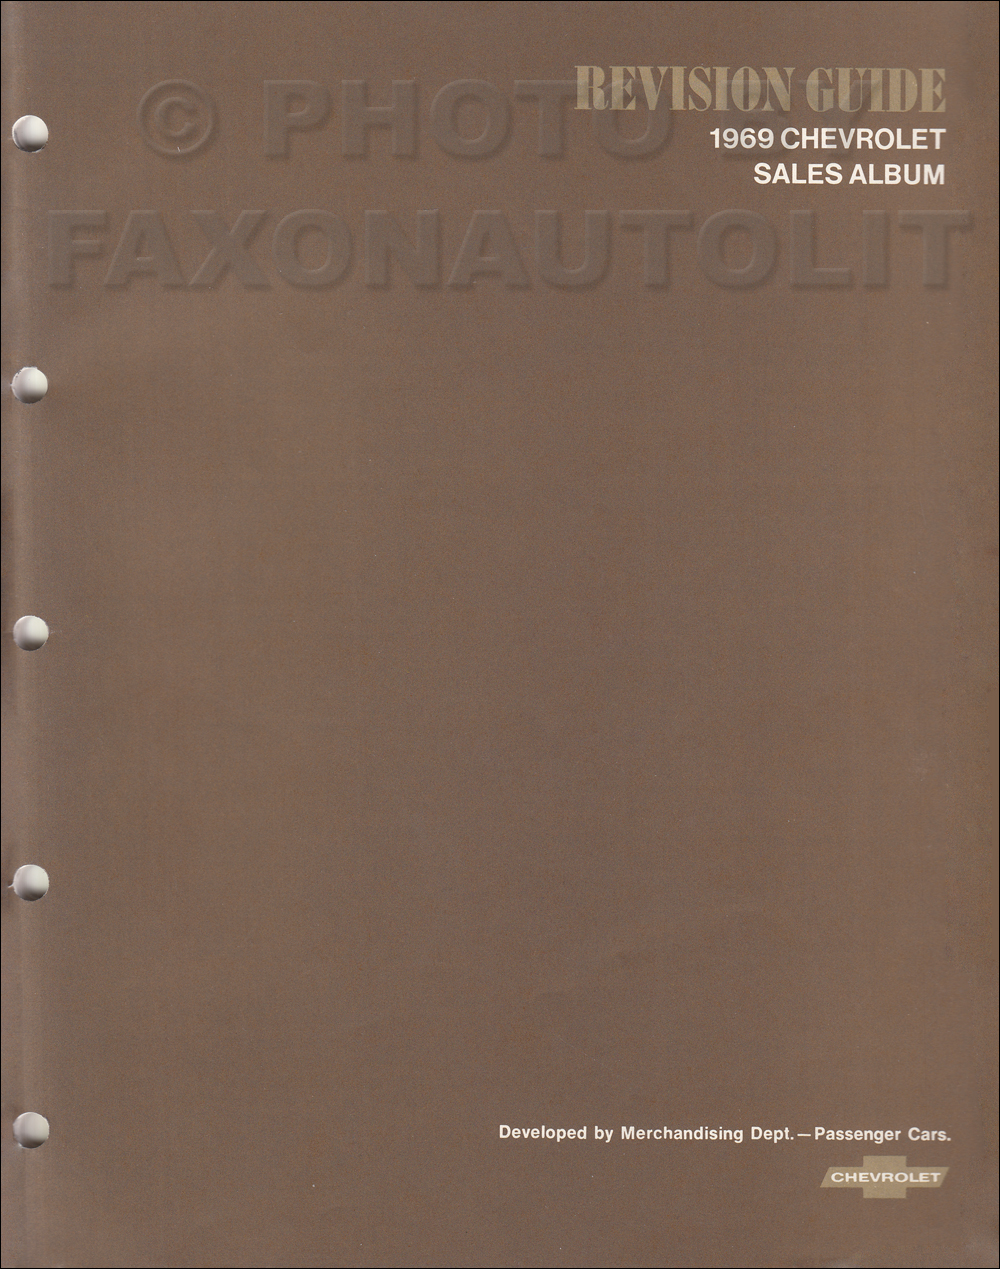 1969 Chevrolet Dealer Album Revision Guide Original